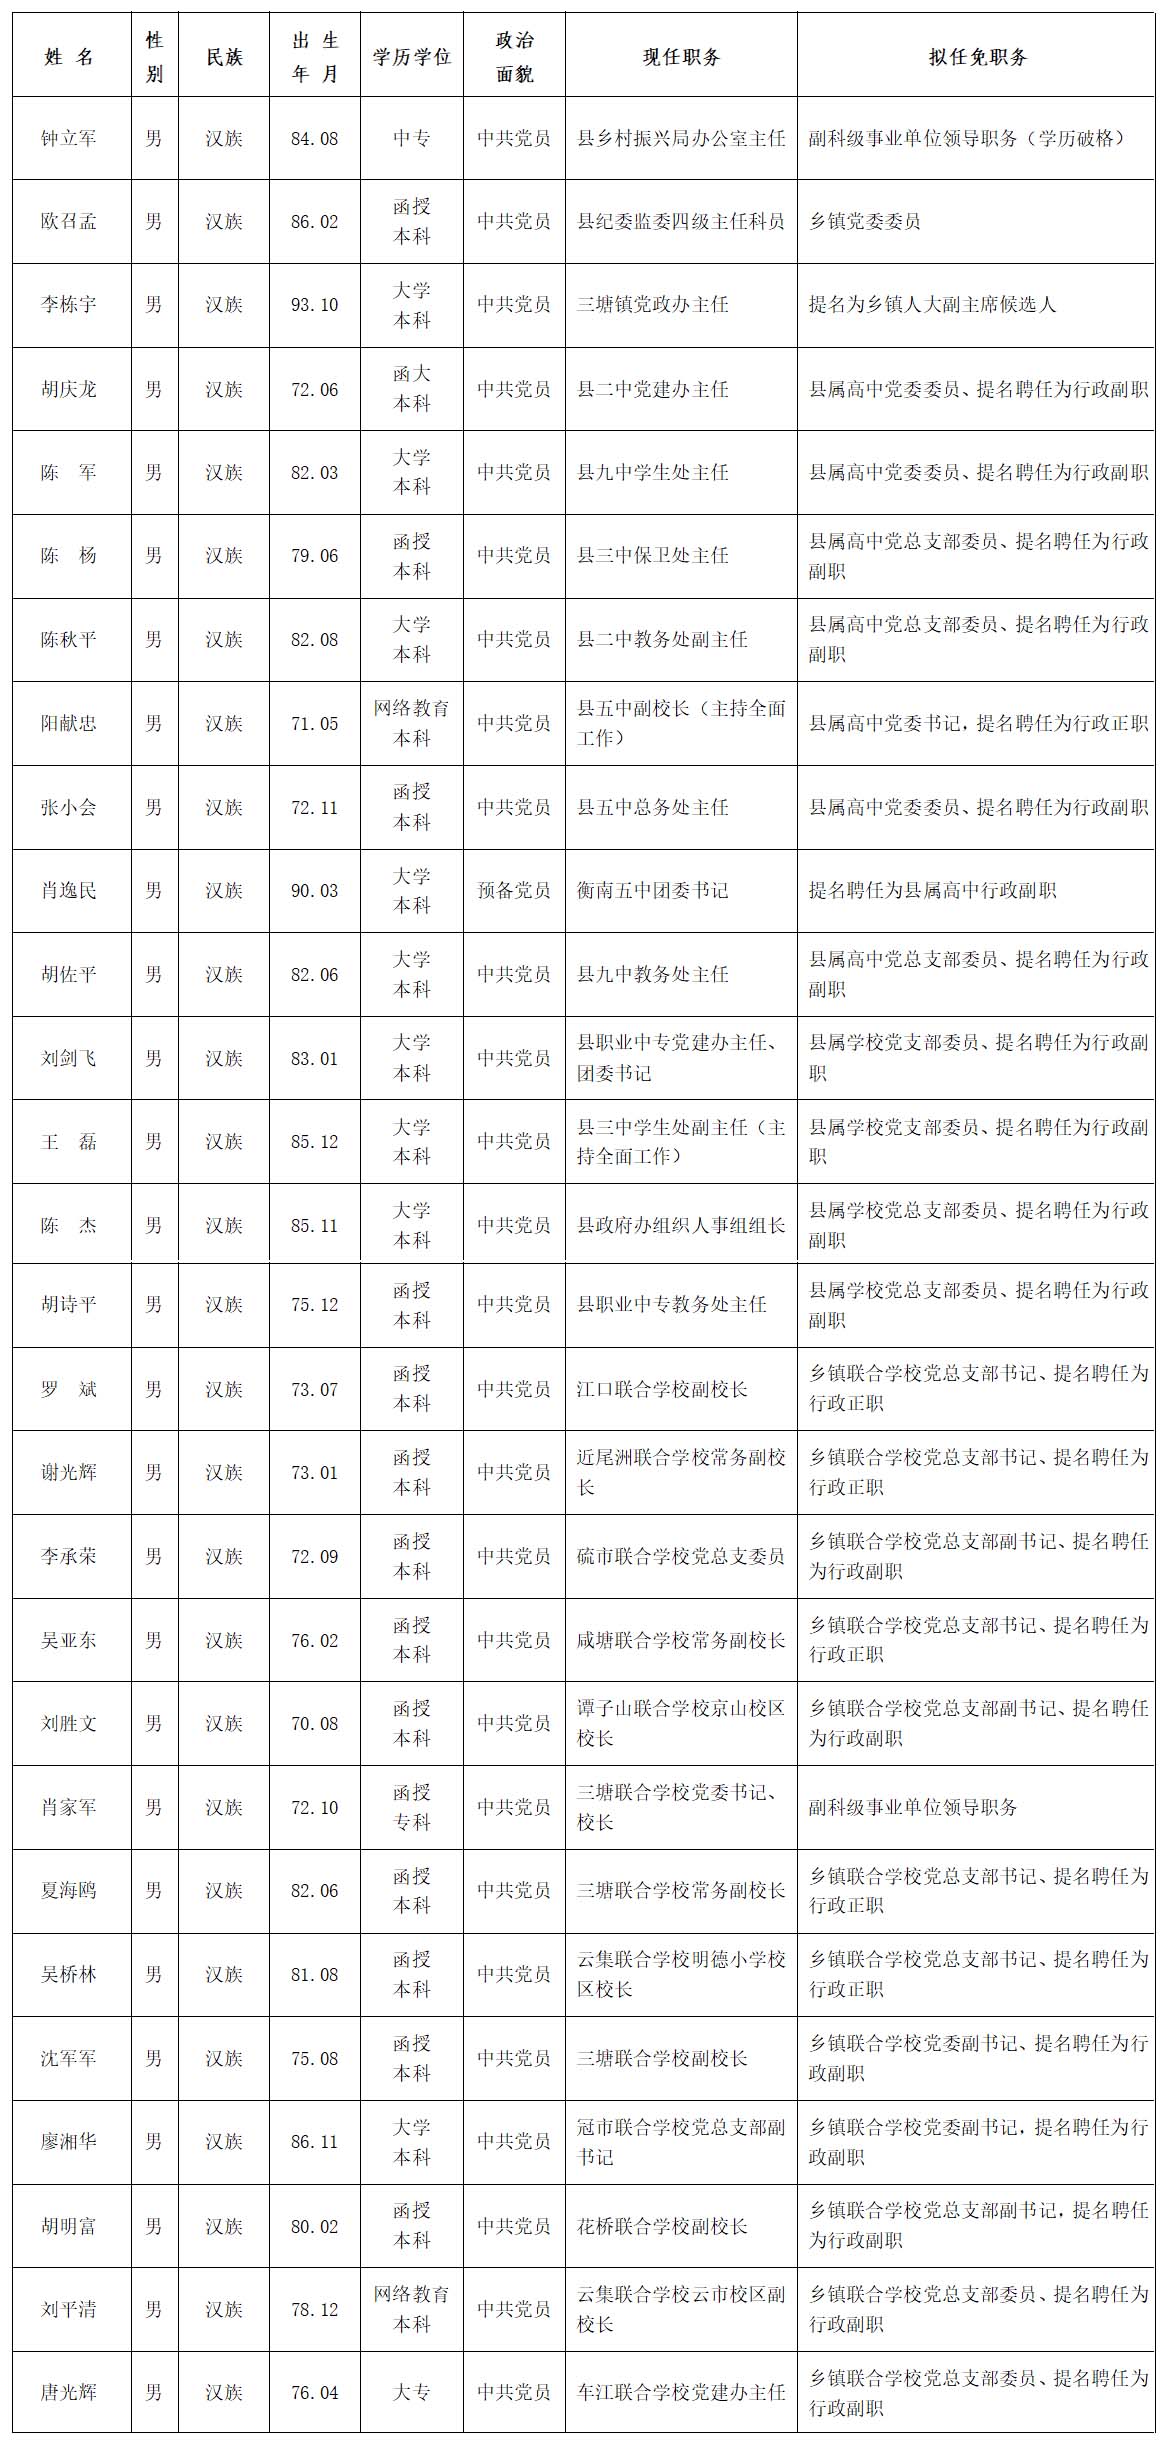 东营县级干部任前公示 25名同志拟提拔任新职